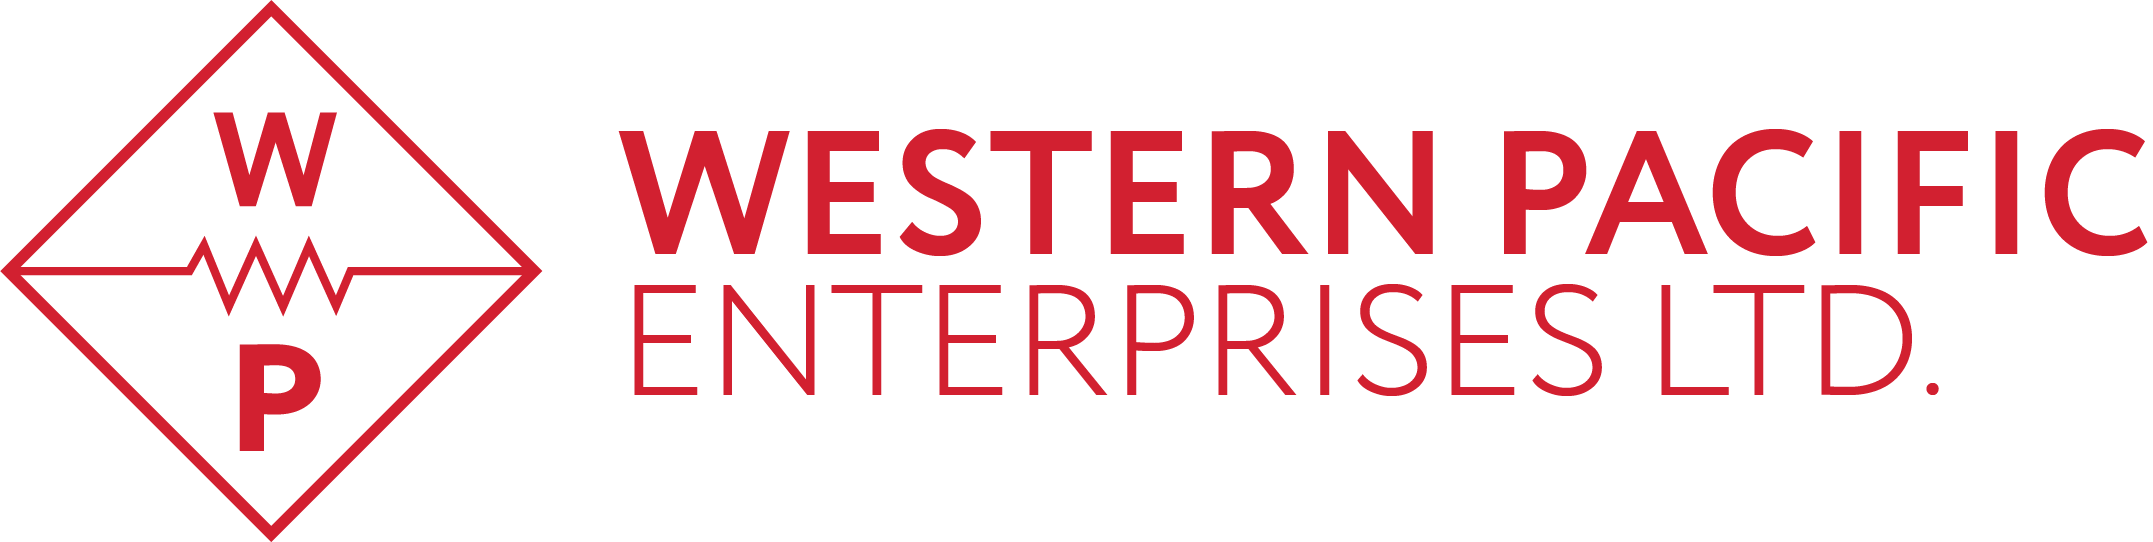 Western Pacific Enterprises Ltd.